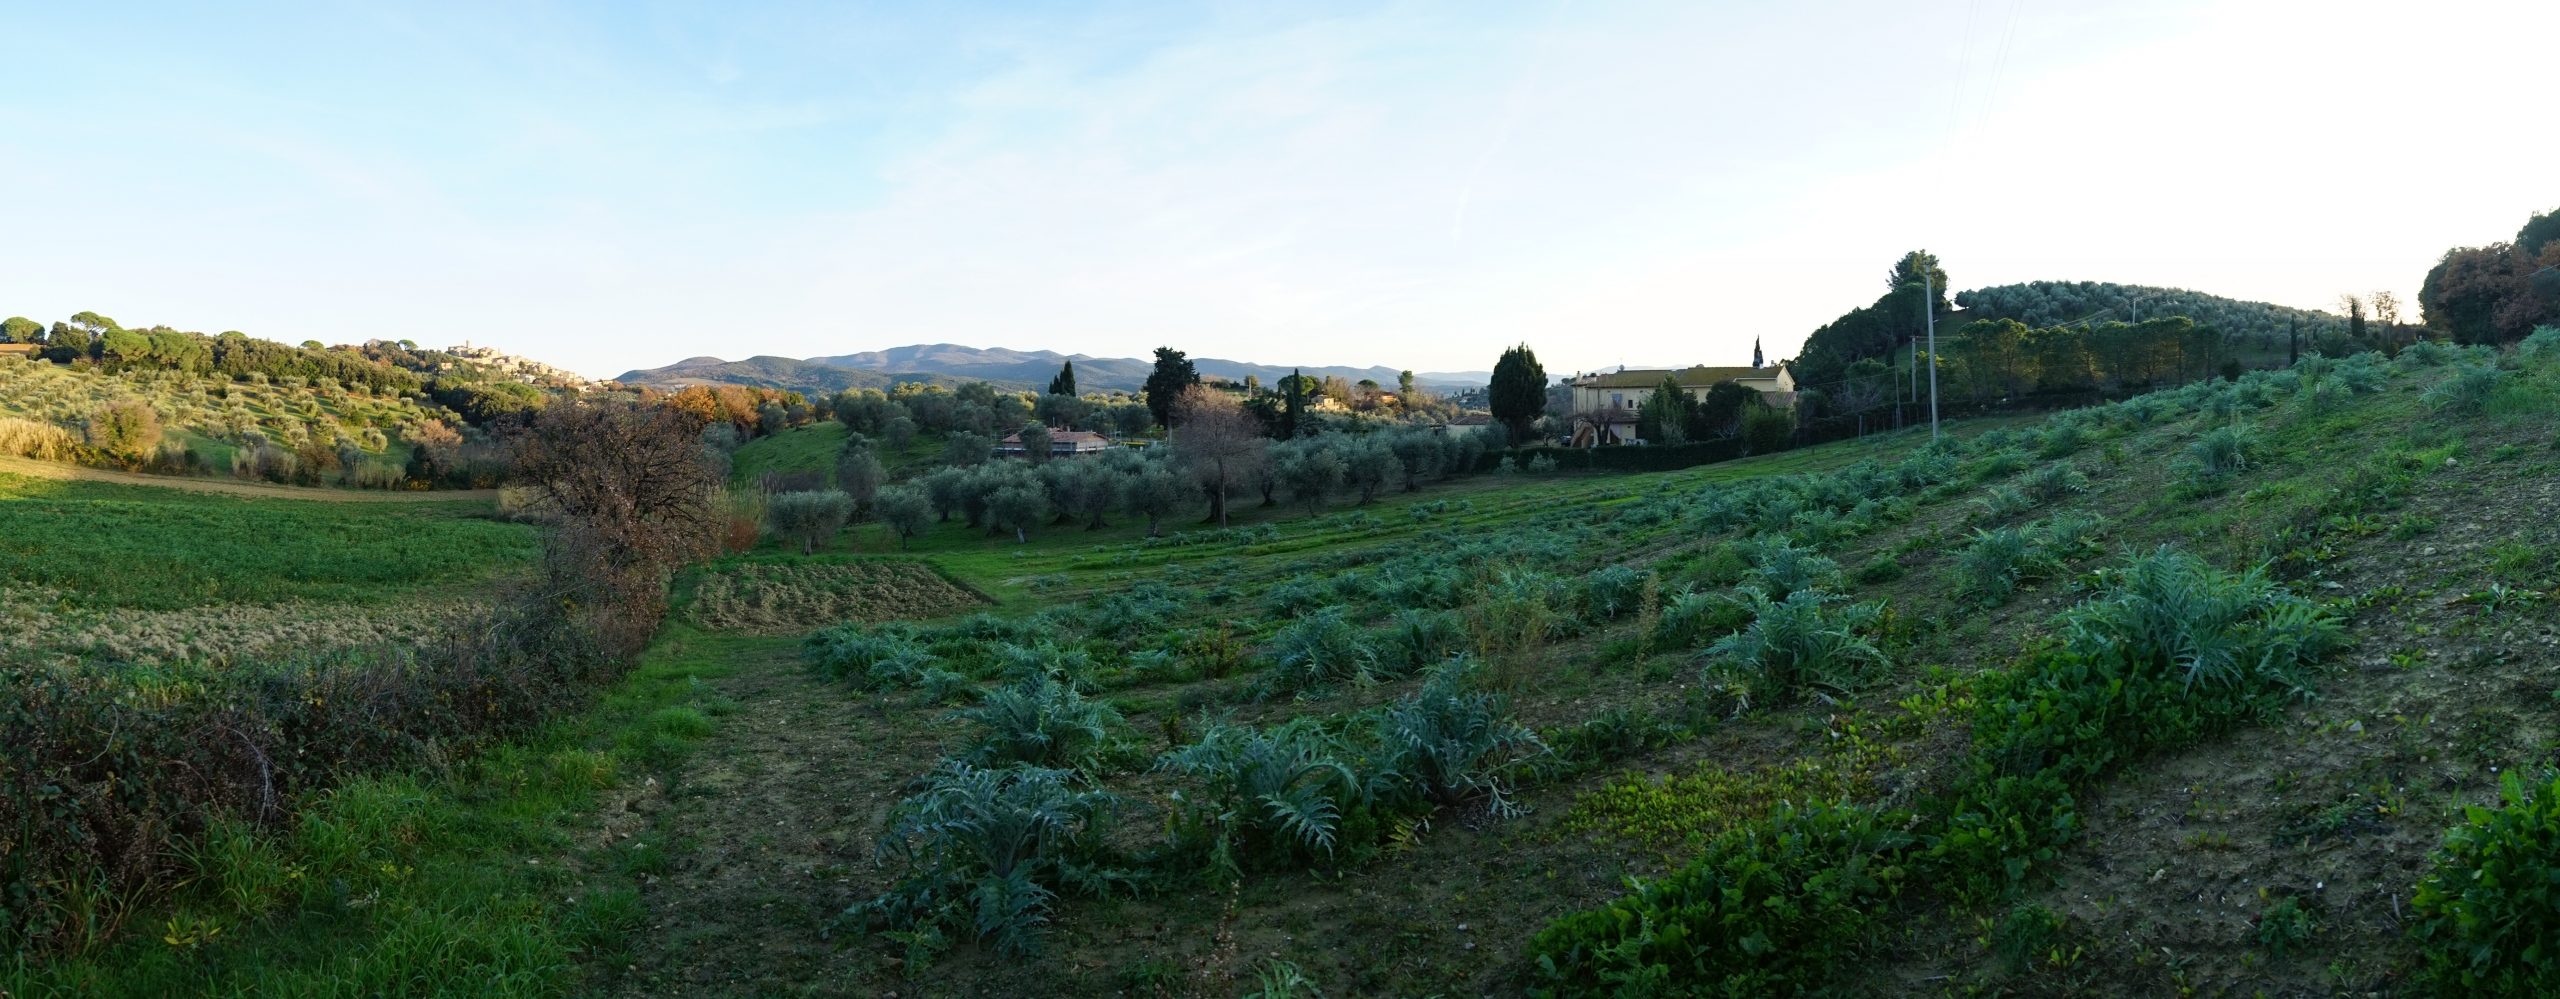 Carciofi, ortaggi - Podere Fornelli, Casale Marittimo, Toscana